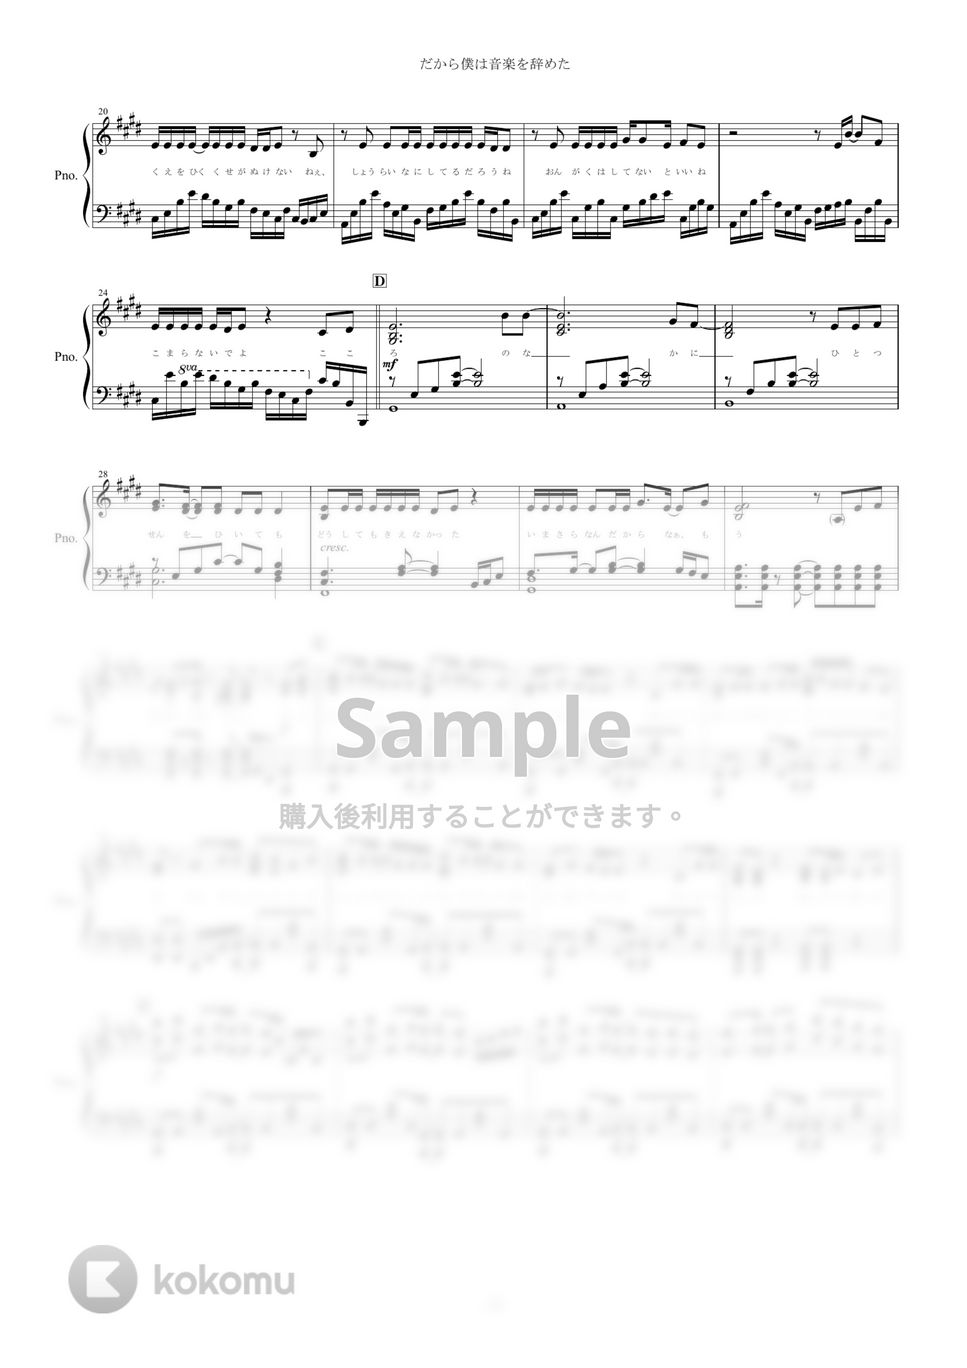 ヨルシカ - だから僕は音楽を辞めた (ピアノ楽譜/全６ページ/上級) by yoshi